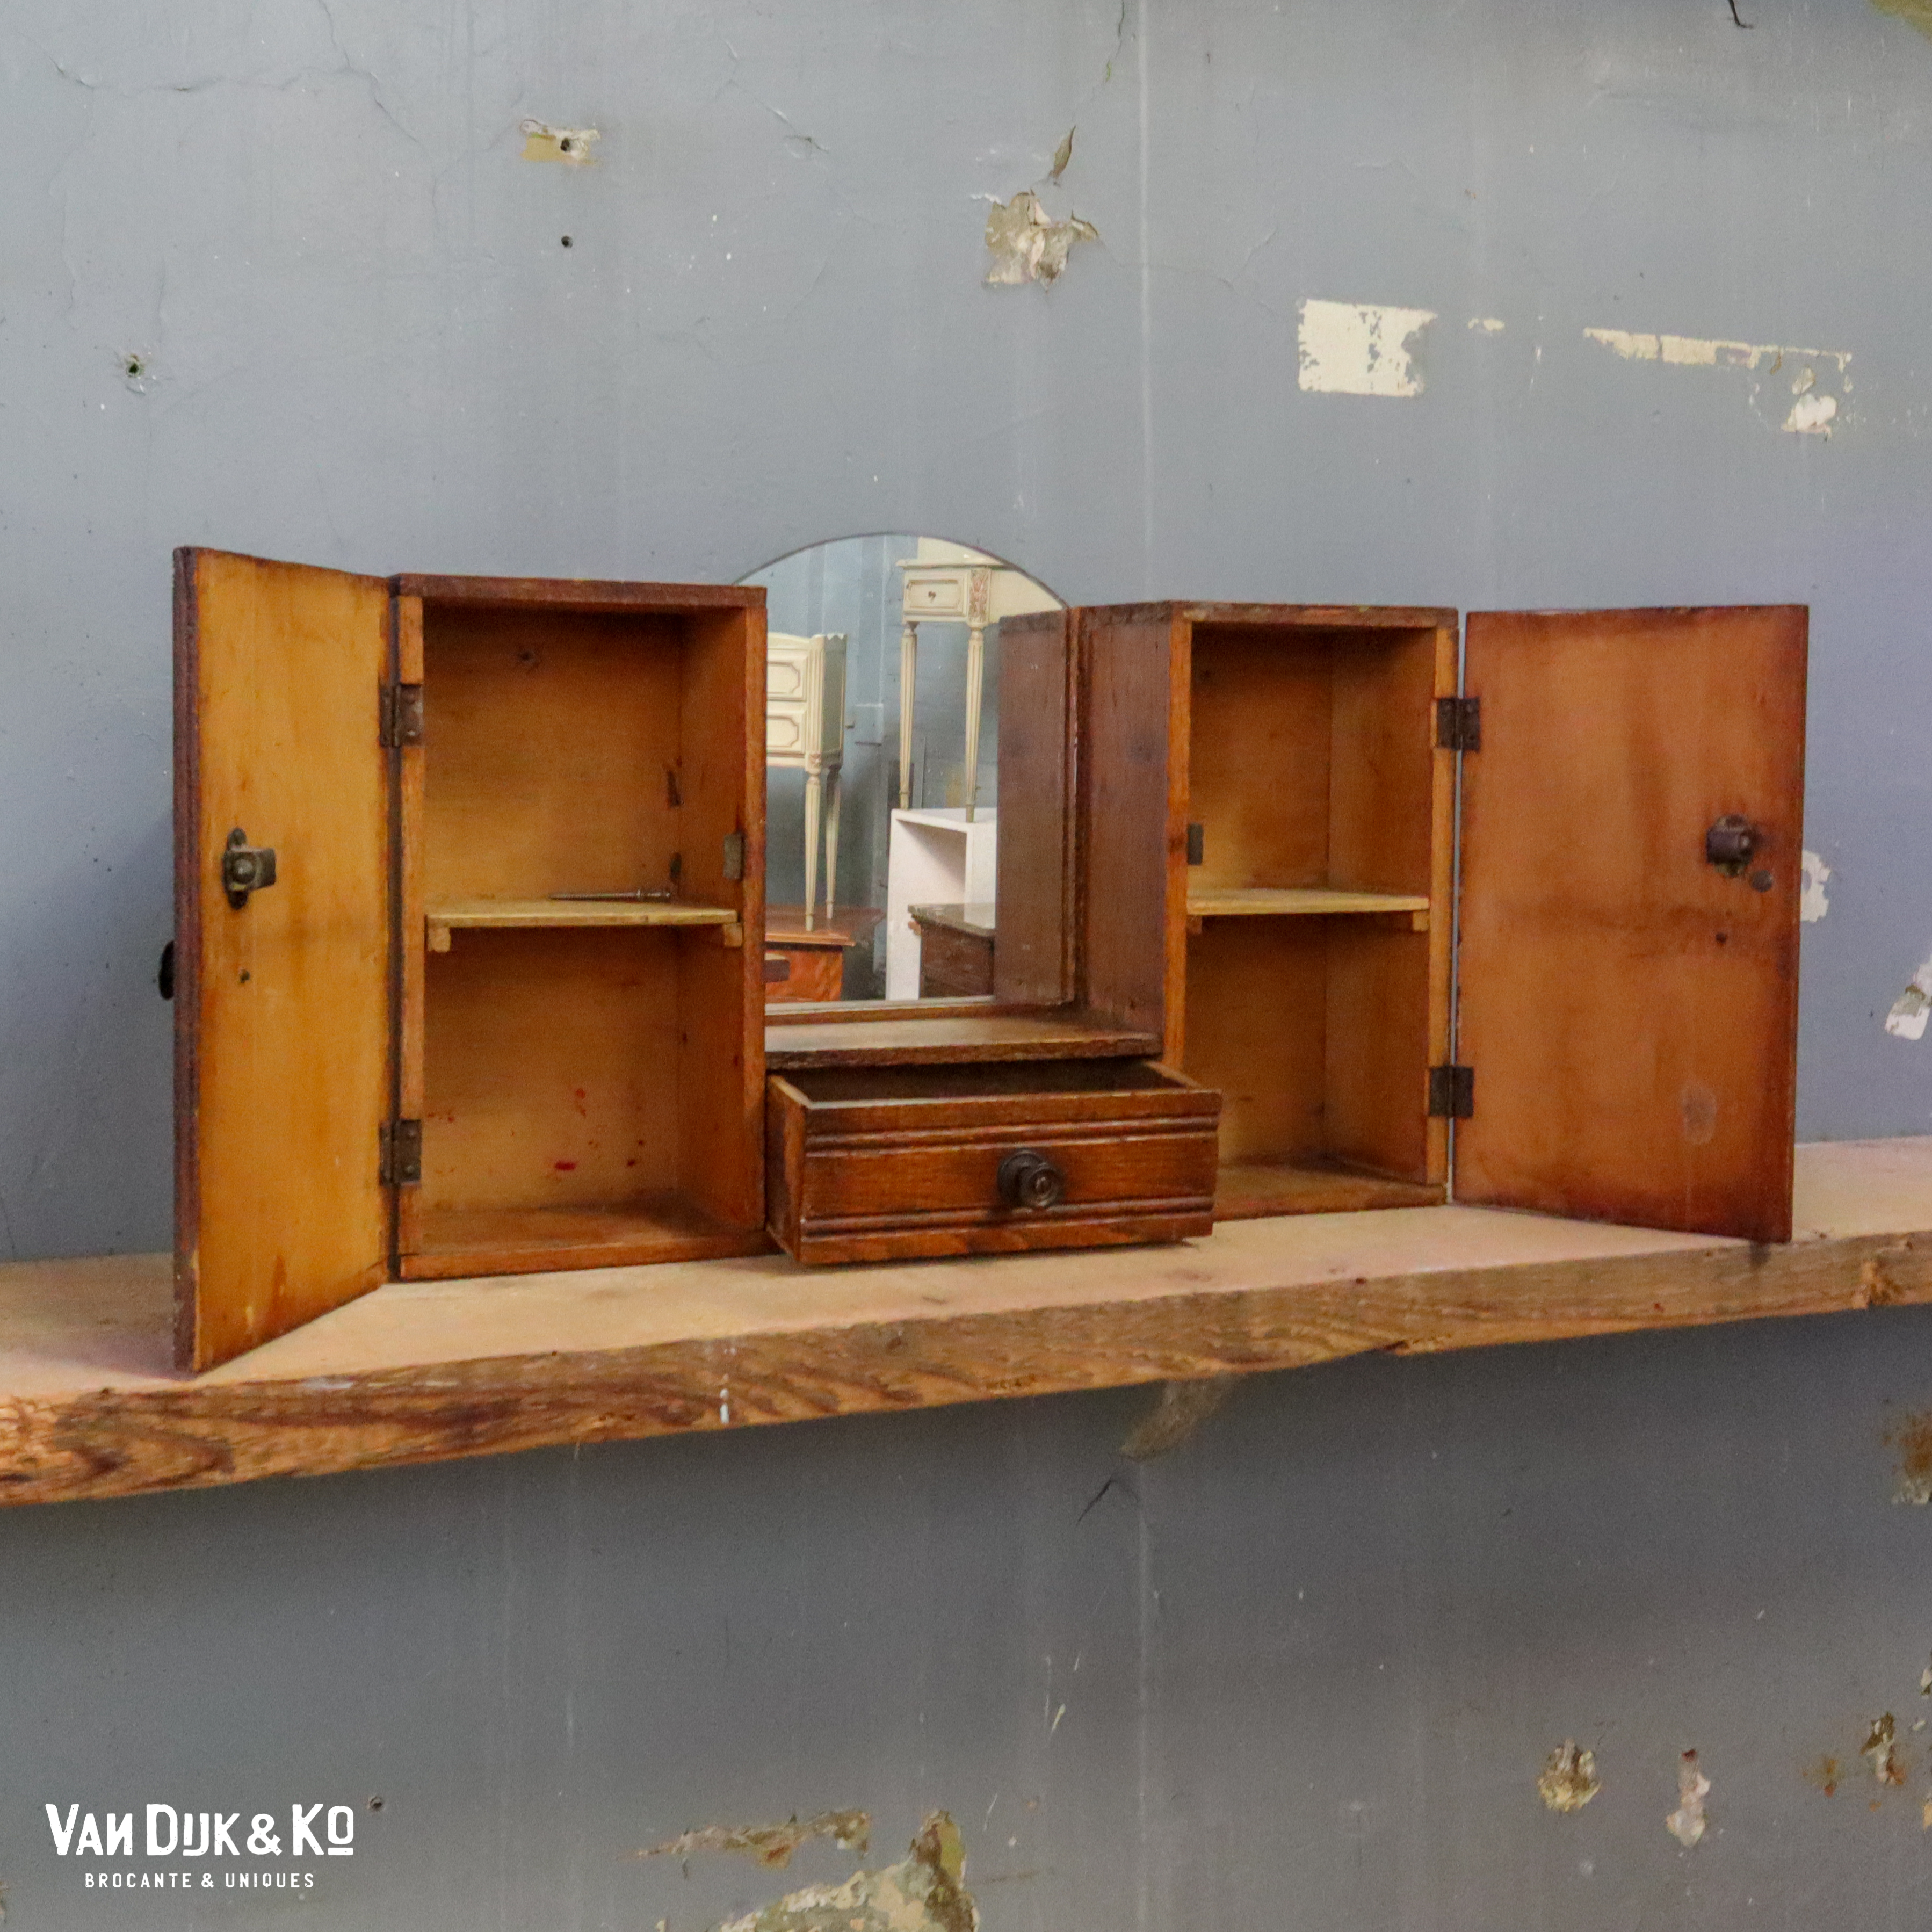 belangrijk Patriottisch voorspelling Vintage hangkastje met spiegel » Van Dijk & Ko